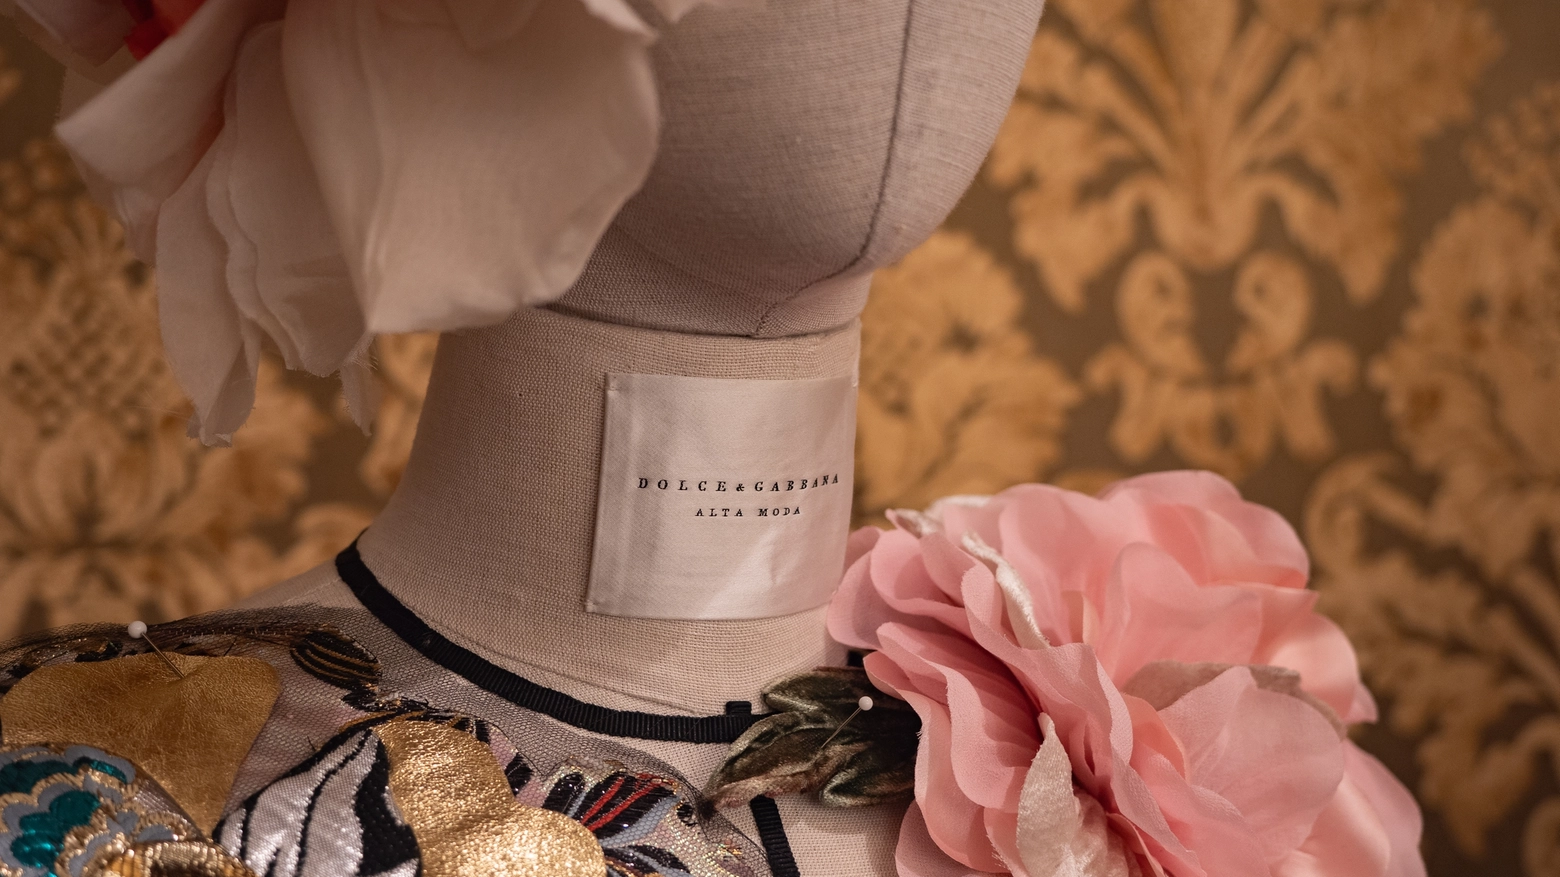 Da domenica 7 aprile a mercoledì 31 luglio sarà possibile visitare l’esposizione dedicata alle inconfondibili creazioni di Domenico Dolce e Stefano Gabbana